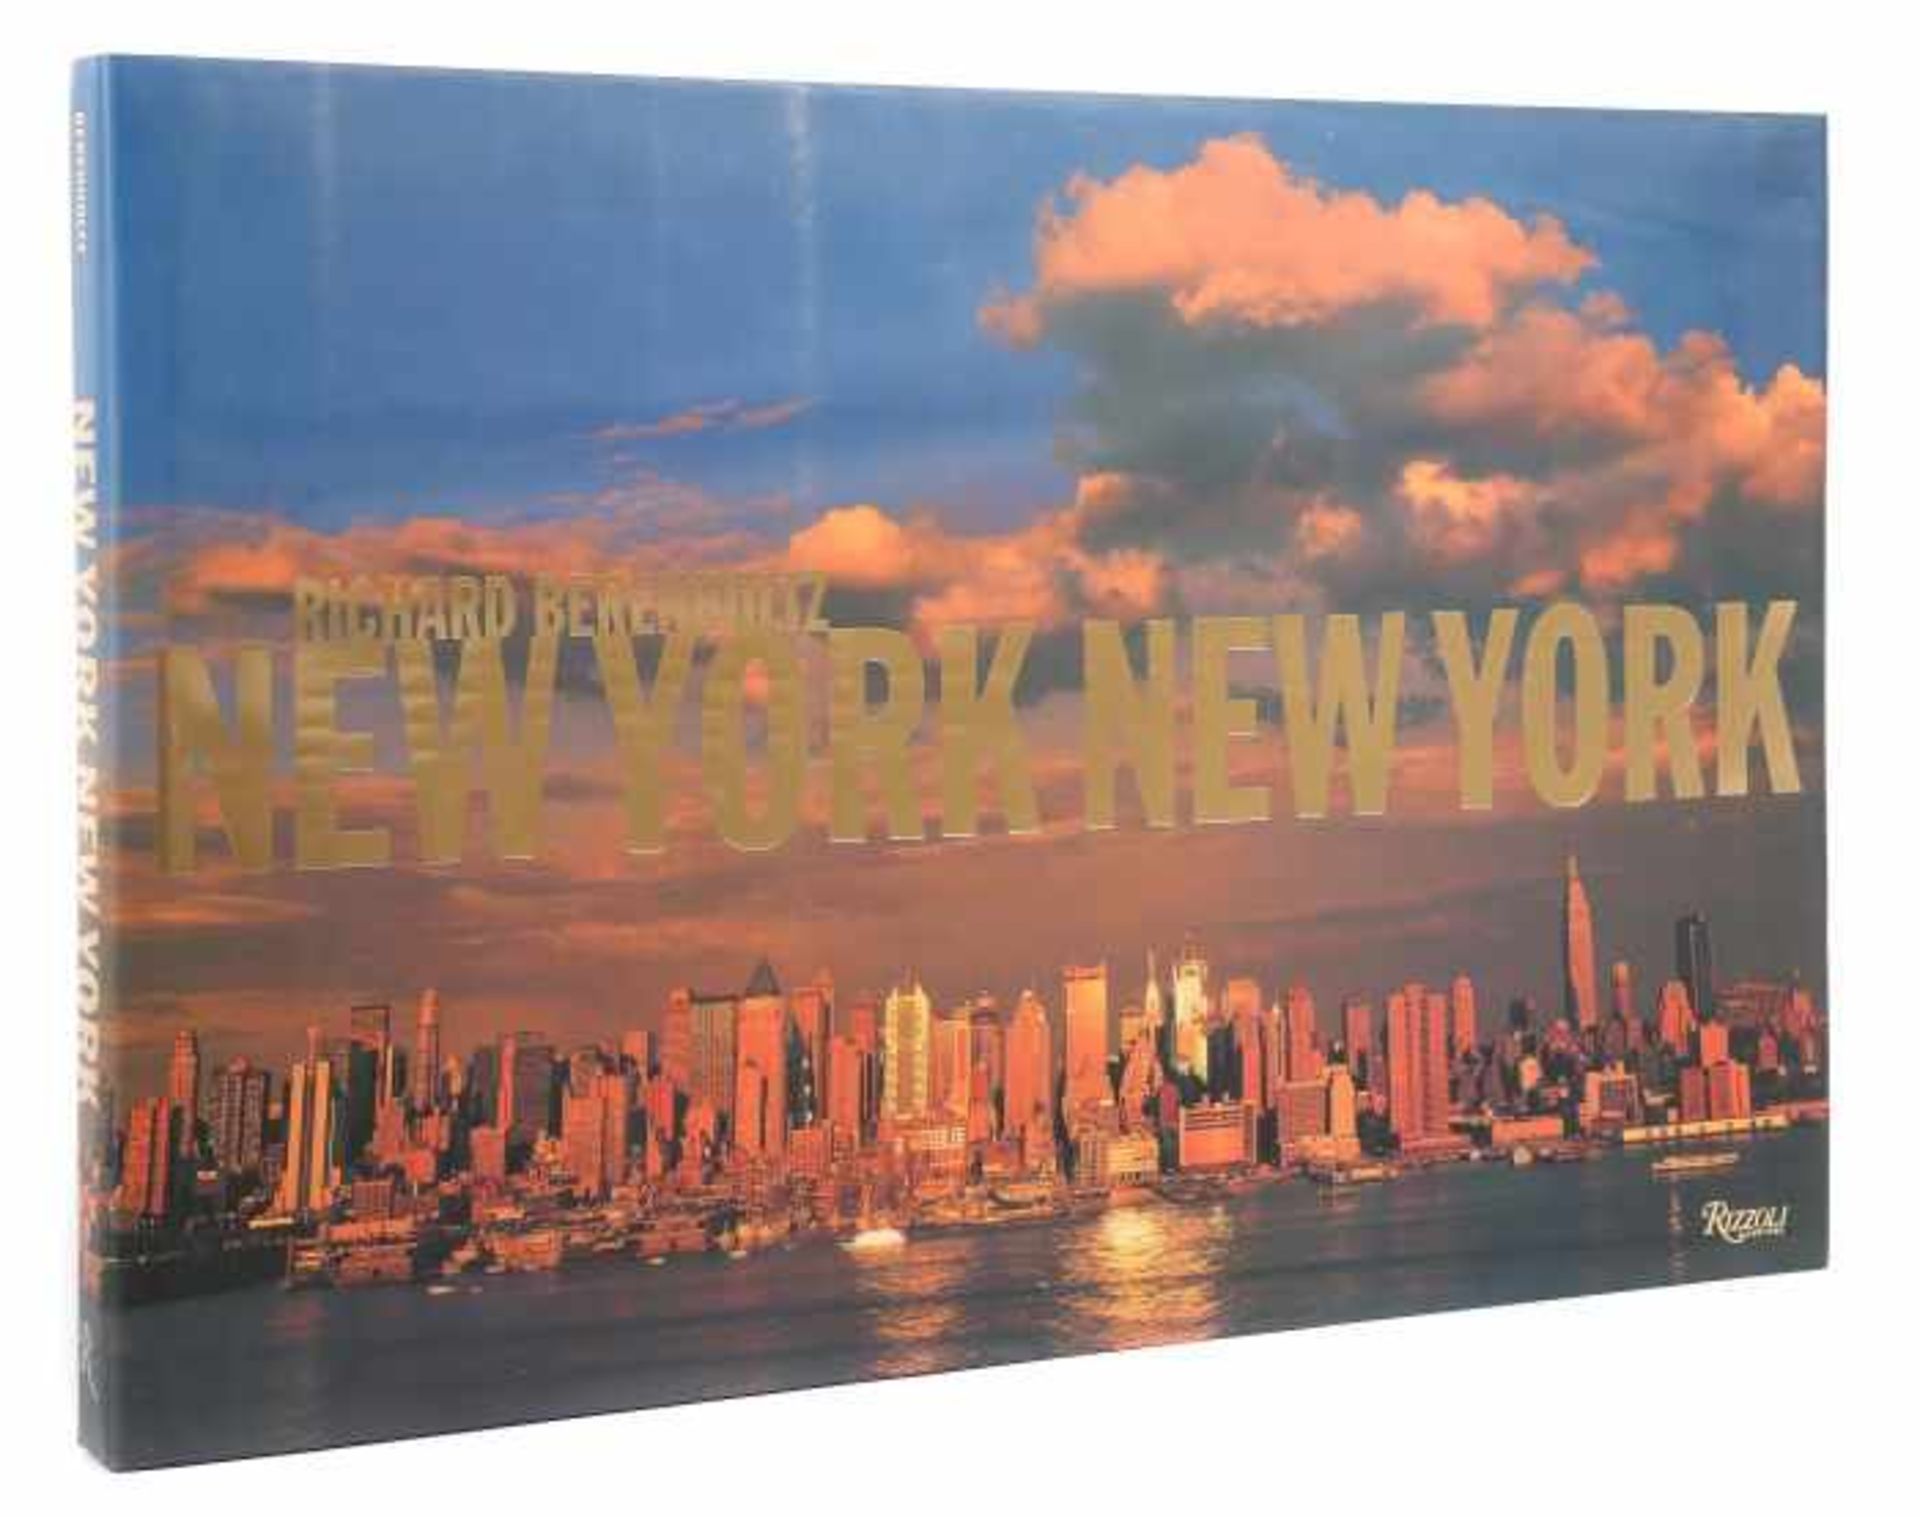 Berenholtz, RichardNew York New York, Rizzoli, 2006/08, handnum. und sign. Exp. 4570 von insg.